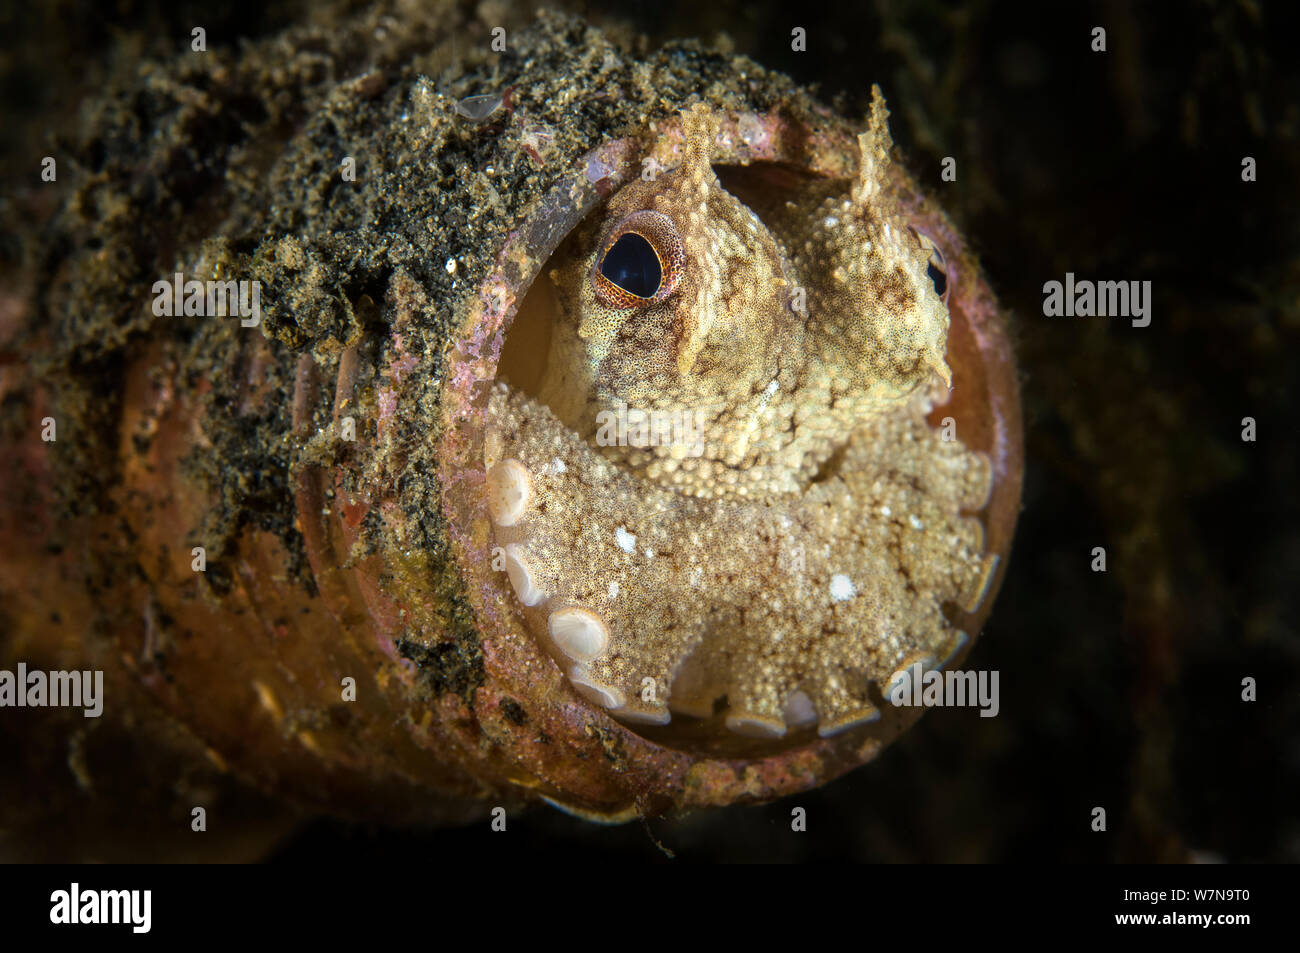 Eine geäderte Octopus (Amphioctopus Marginatus) Peers von einem weggeworfenen Plastikflasche. Fehlt ein Skelett, Kraken kann squeese ihre Körper in die kleinsten Räume und durch die Winzigsten Löcher. Lembeh Strait, Molucca Sea, Nord Sulawesi, Indonesien. Süd Ost Asien. Stockfoto